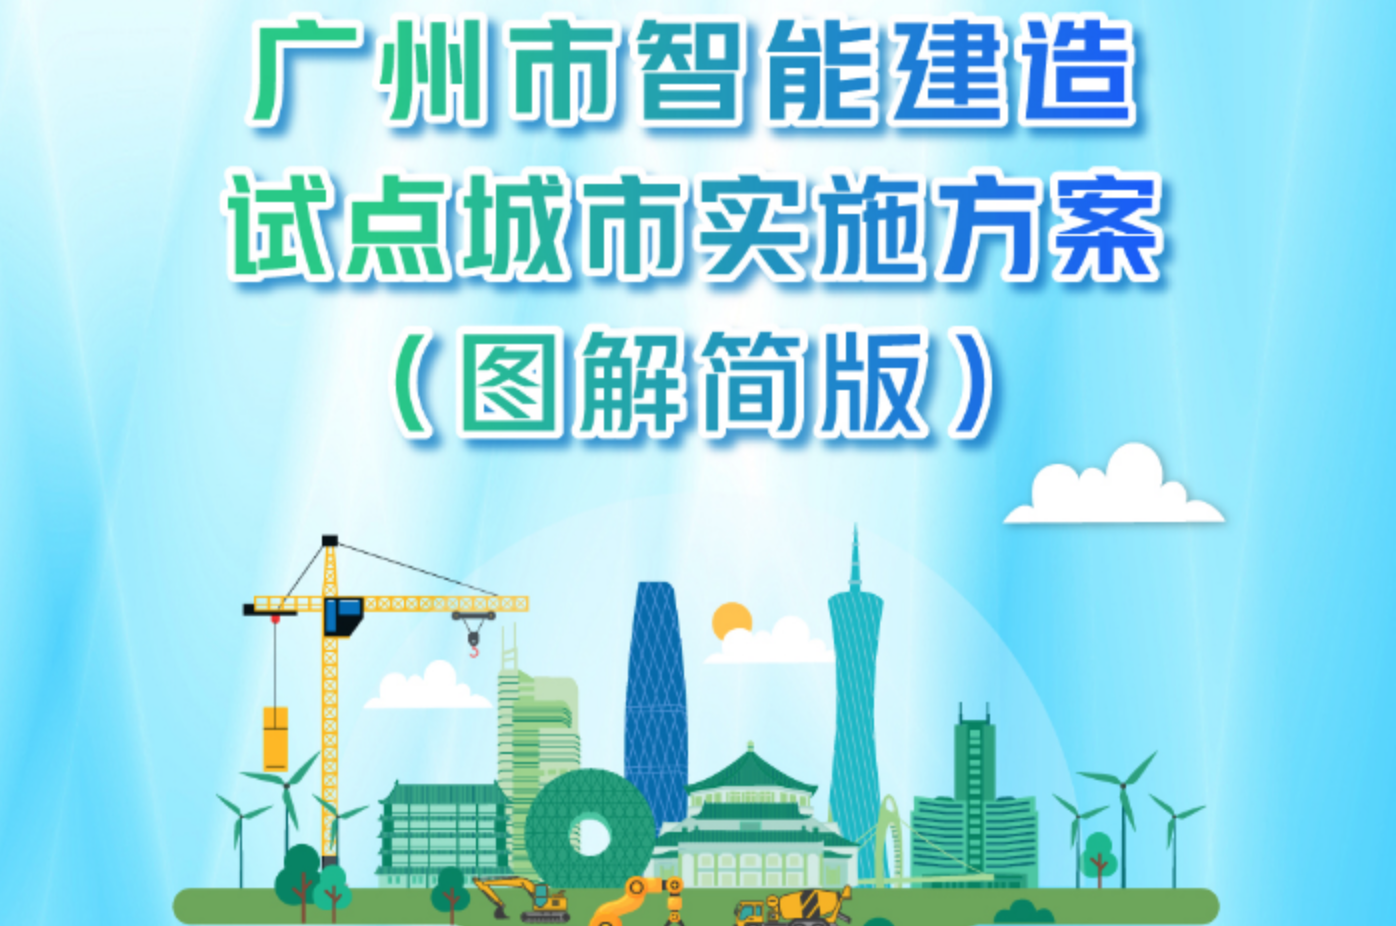 广州市智能建造试点城市实施方案图解来了